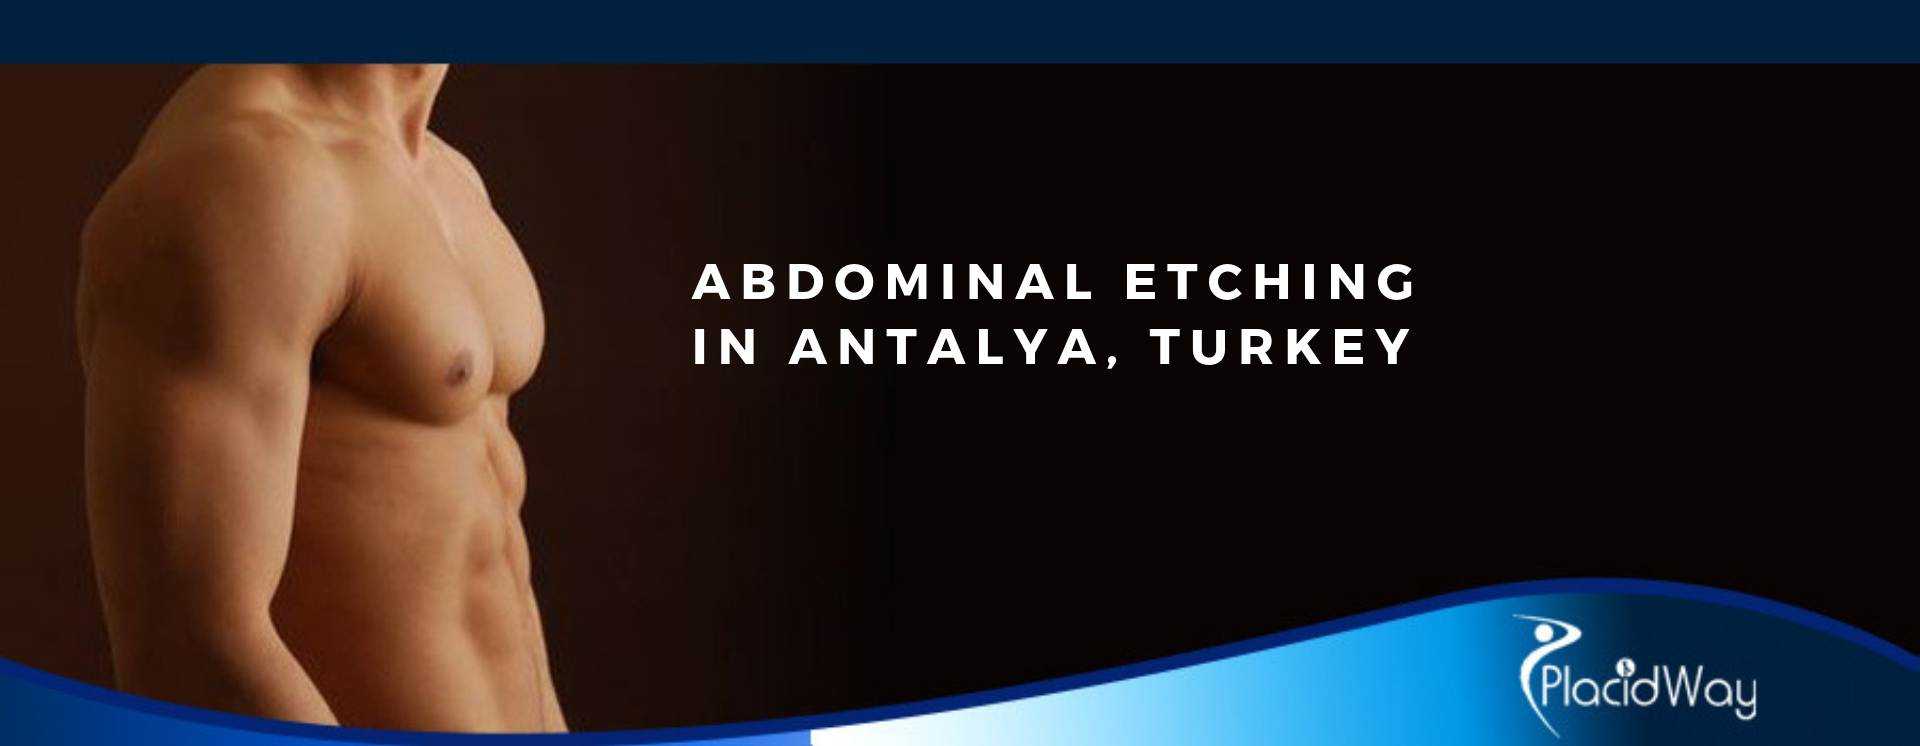 Abdominal Etching in Antalya, Turkey